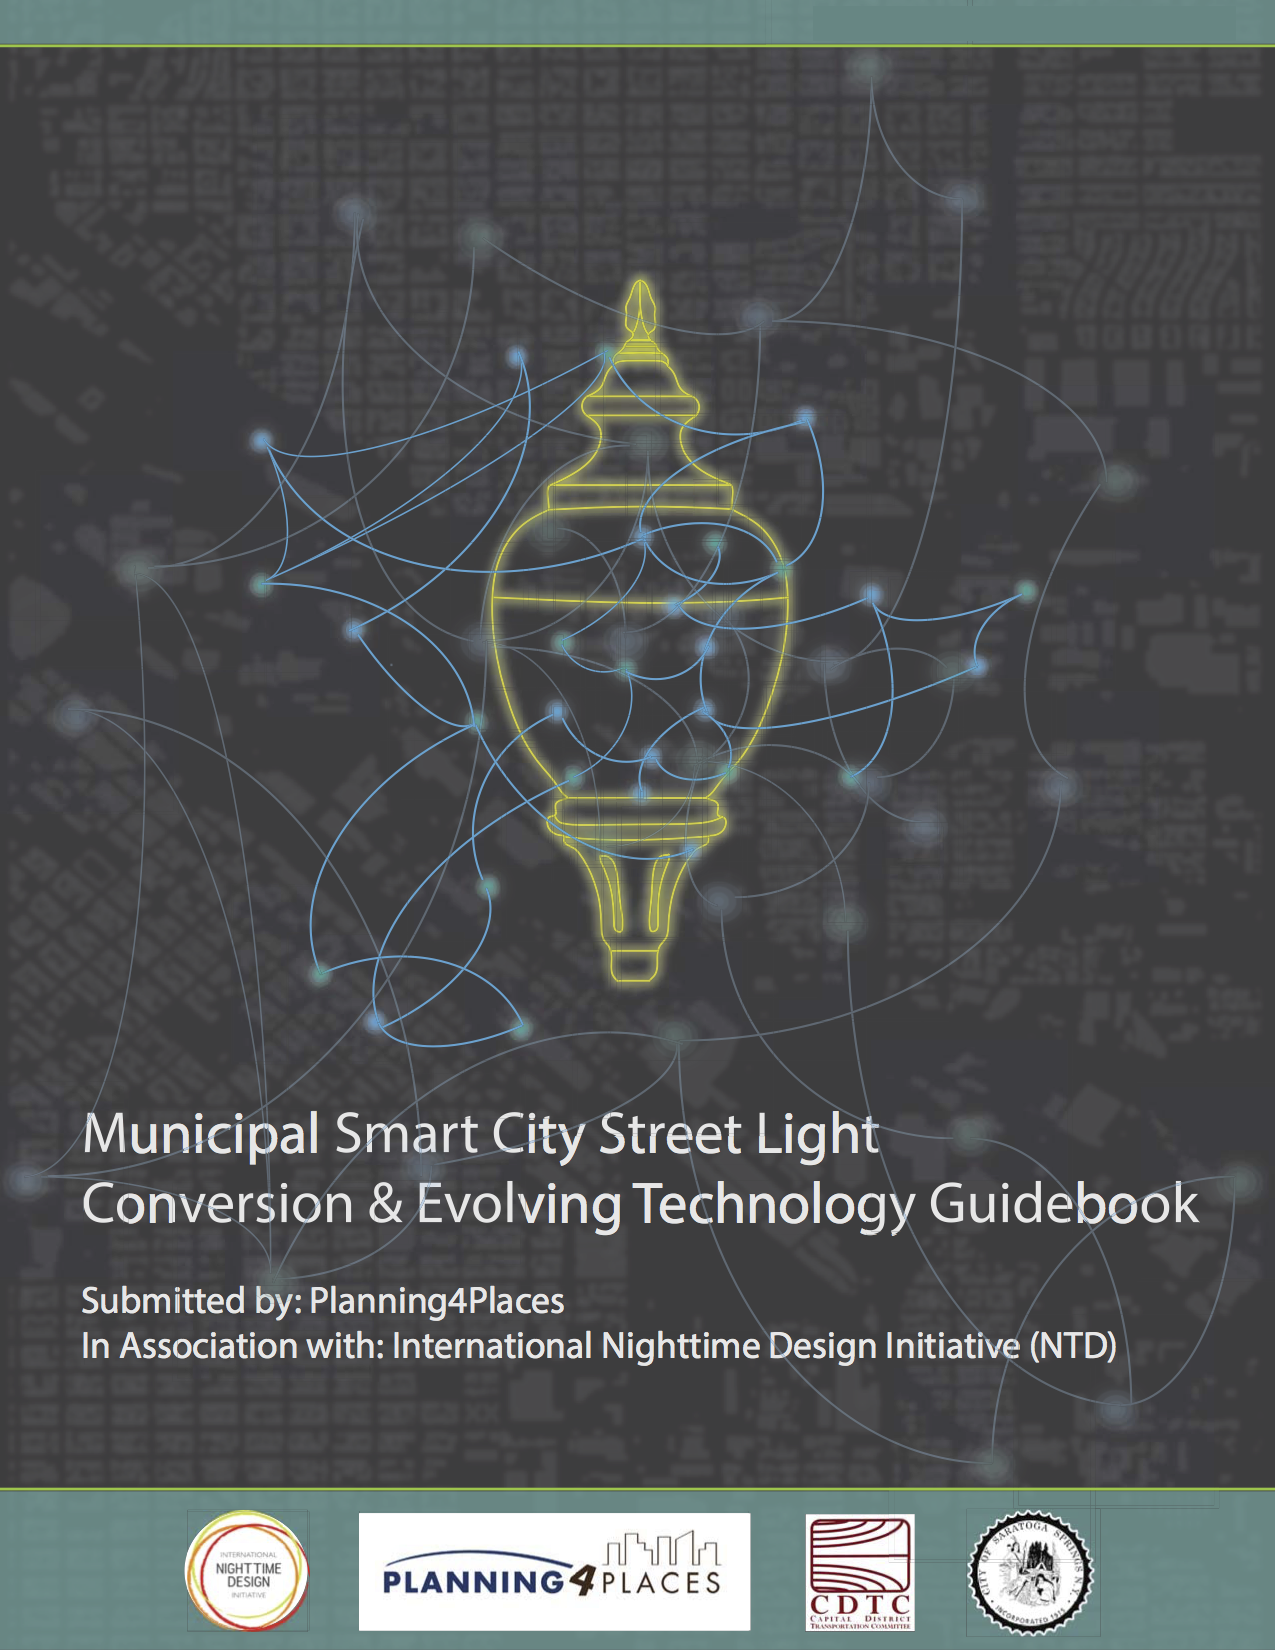 Municipal Smart City Street Light Conversion & Evolving Technology Guidebook